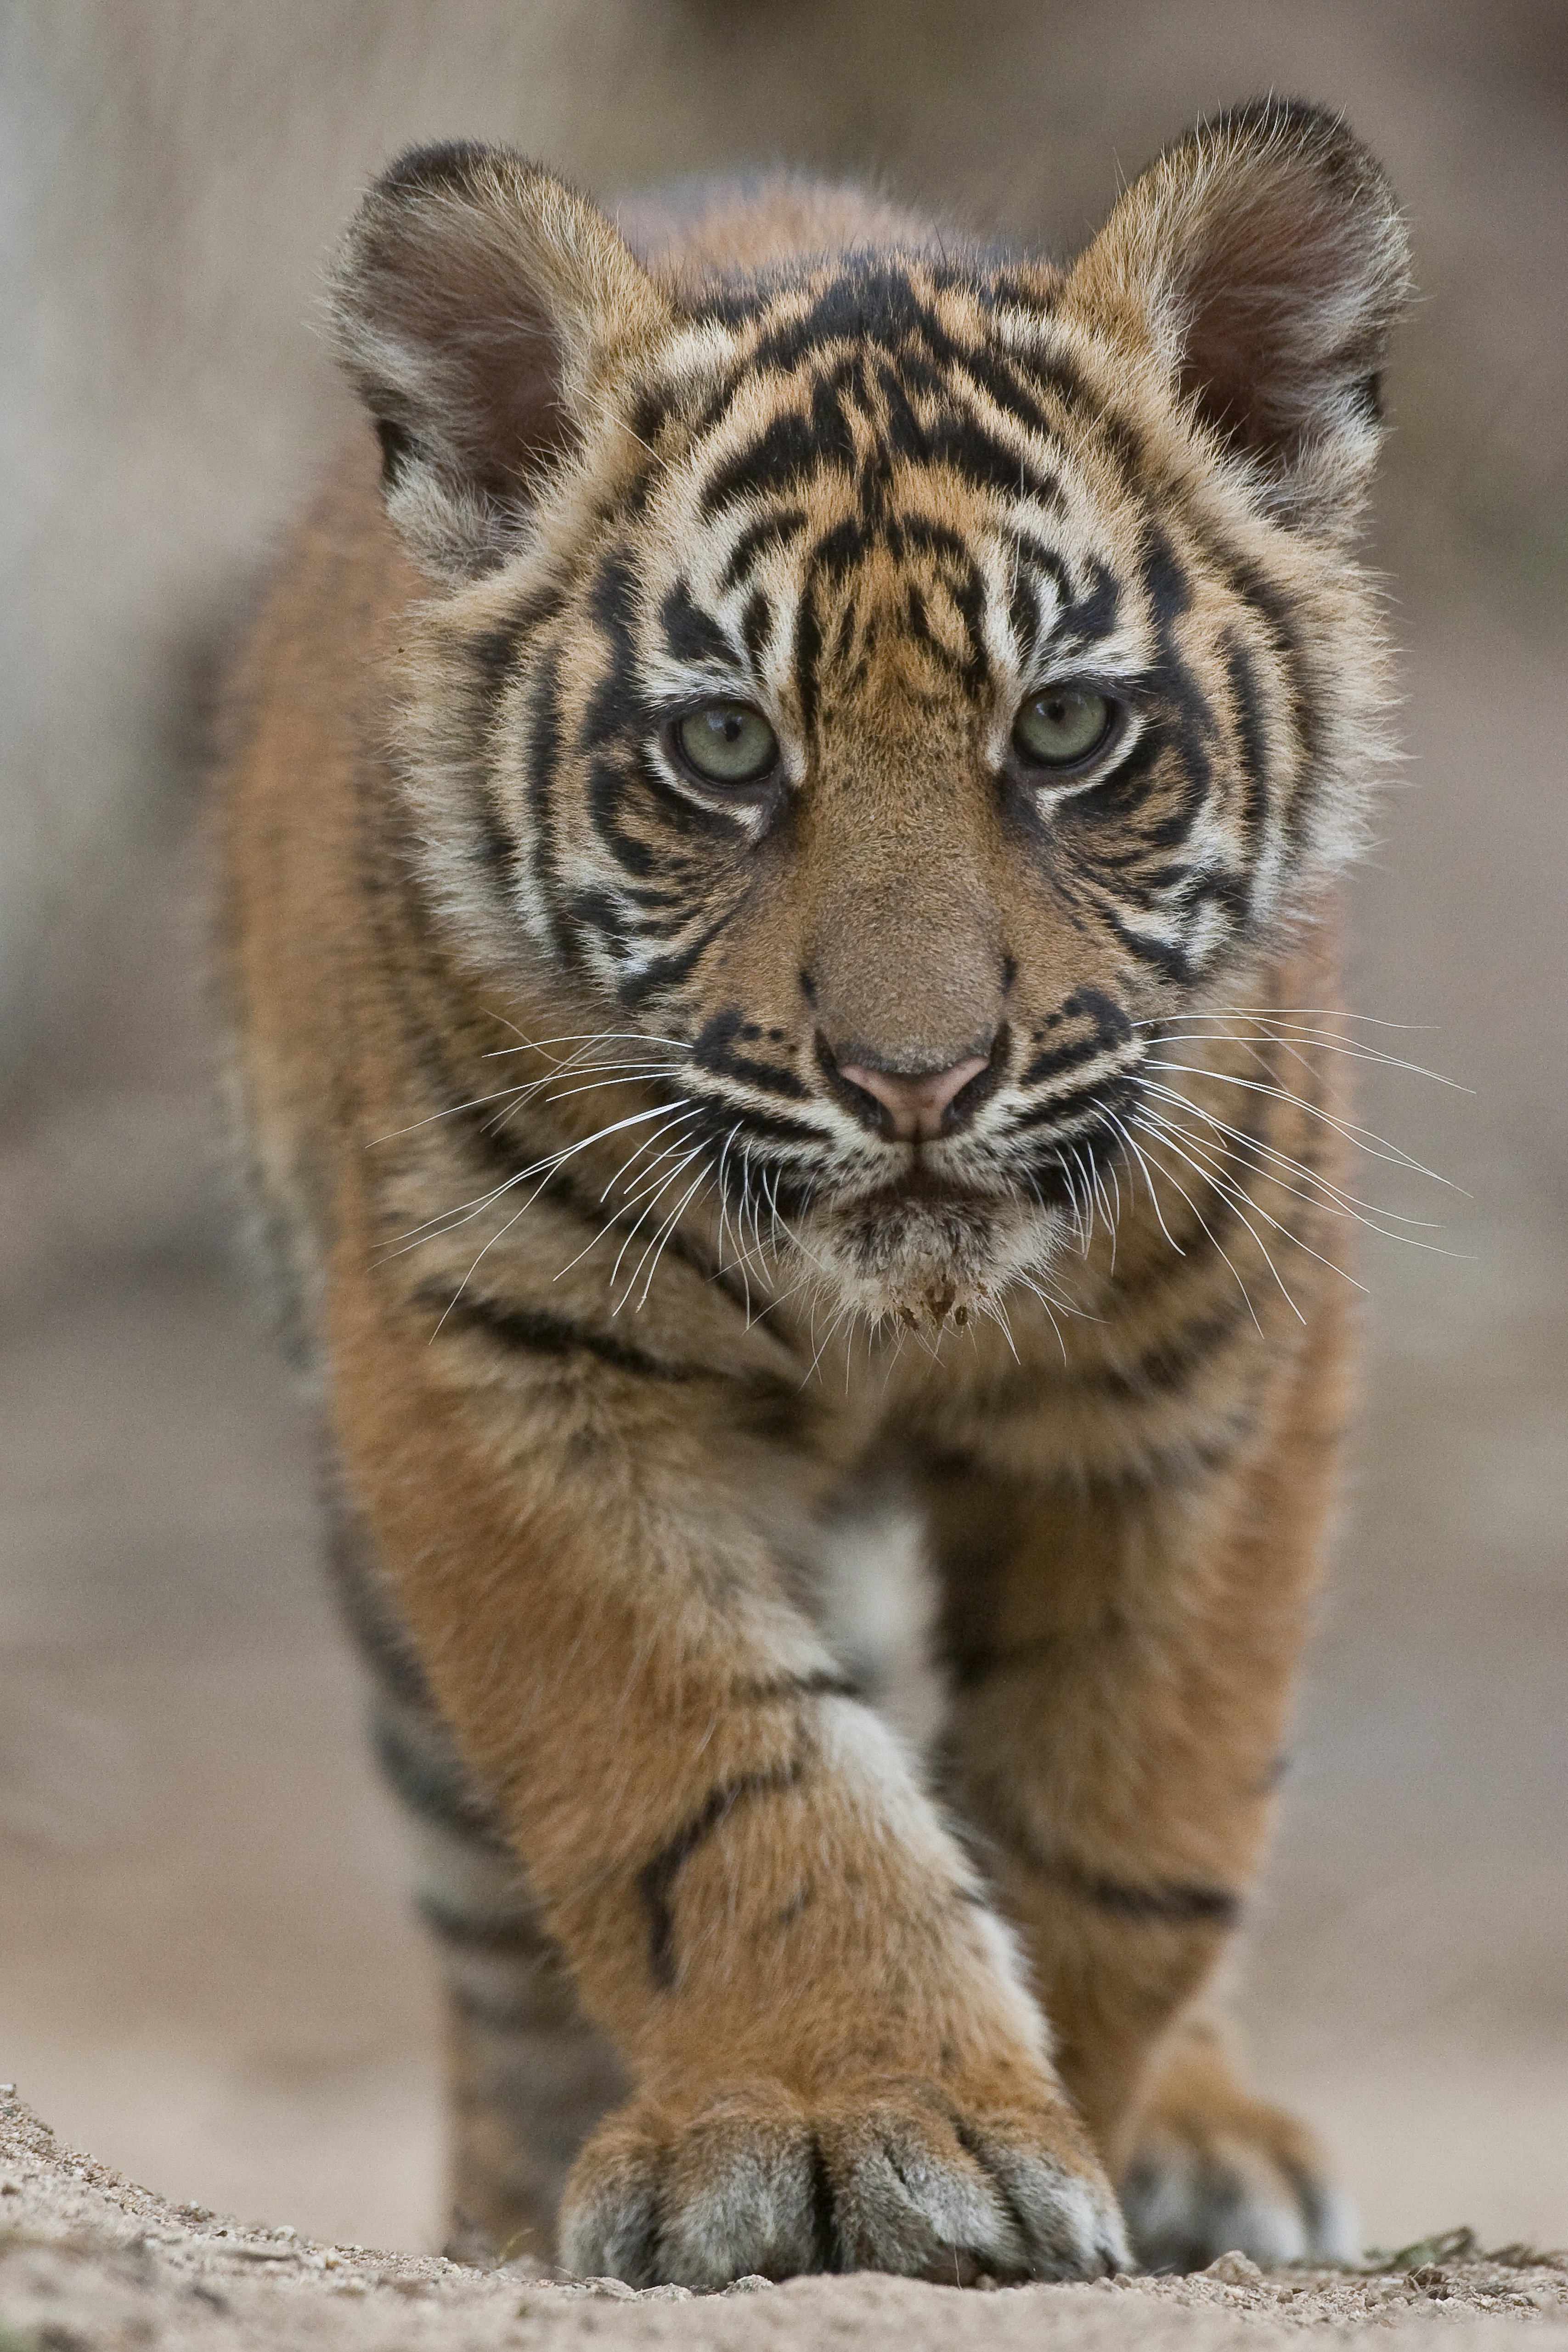 Tiger cub photo